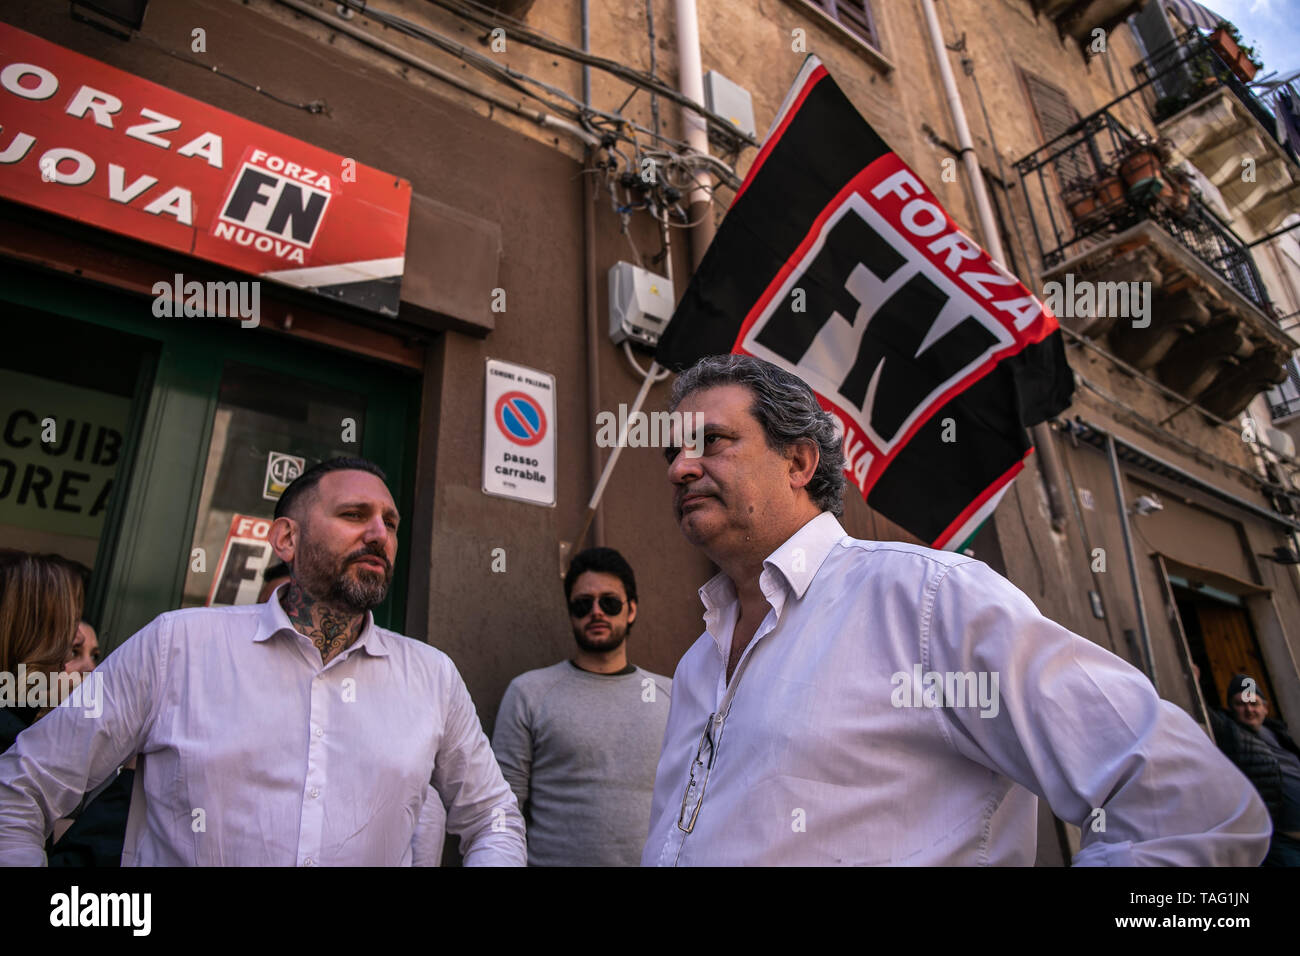 Palermo, Italy. 24th May, 2019. Roberto Fiore, leader of Forza Nuova, in Palermo. Credit: Antonio Melita/Pacific Press/Alamy Live News Stock Photo